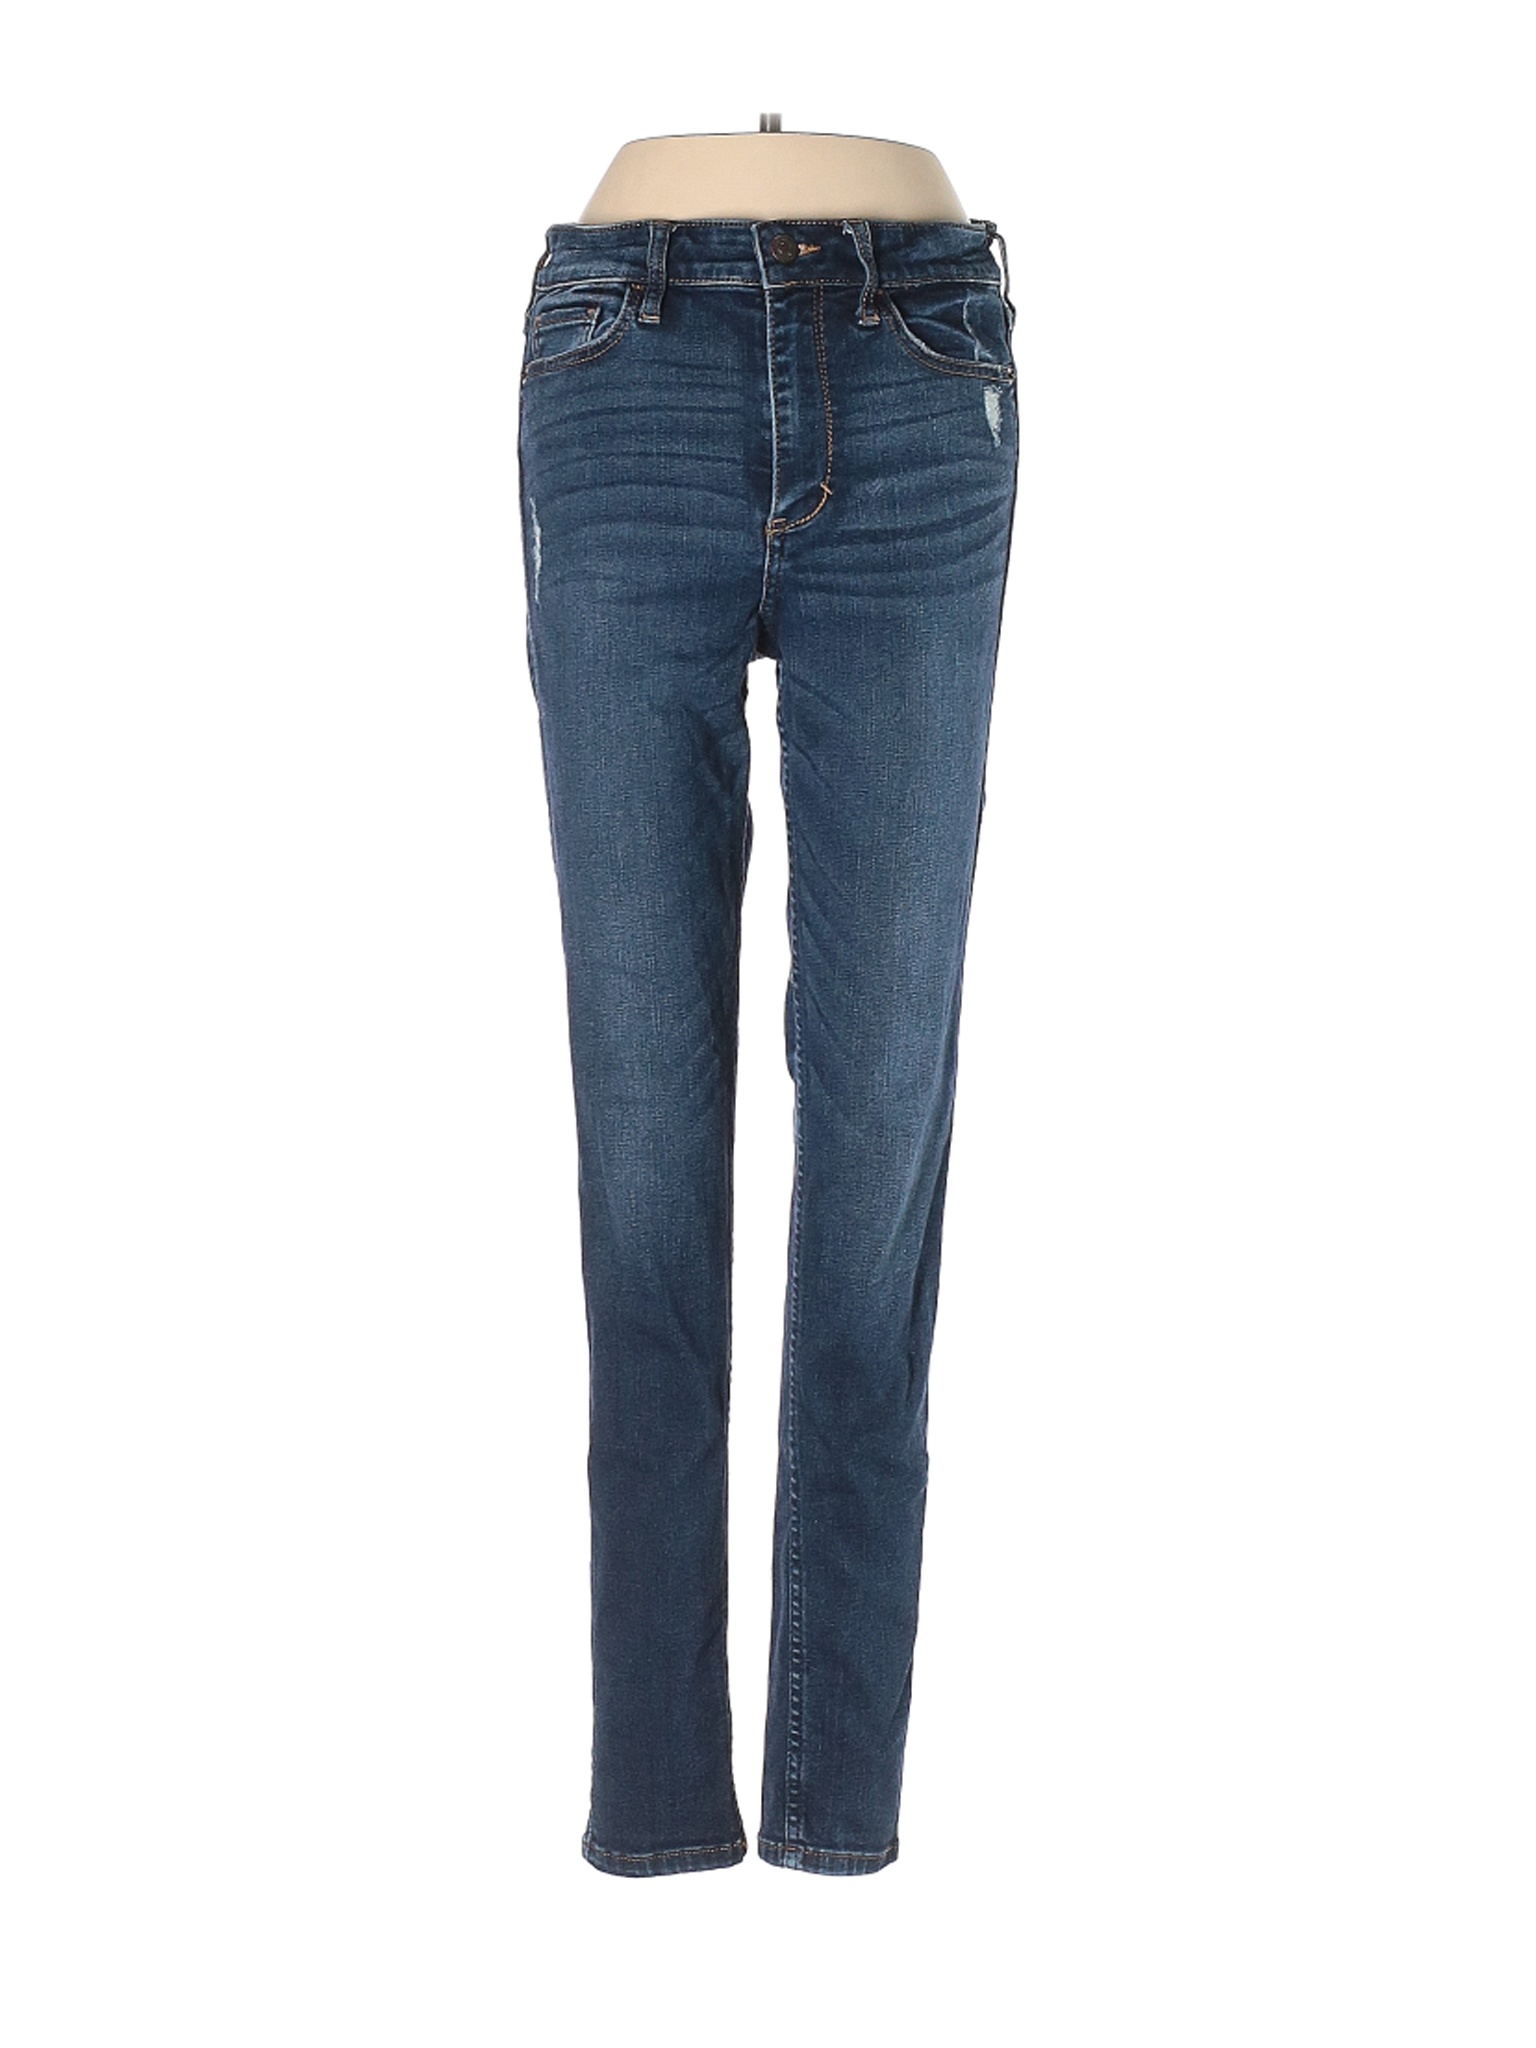 Abercrombie & Fitch Women Blue Jeans 4 | eBay